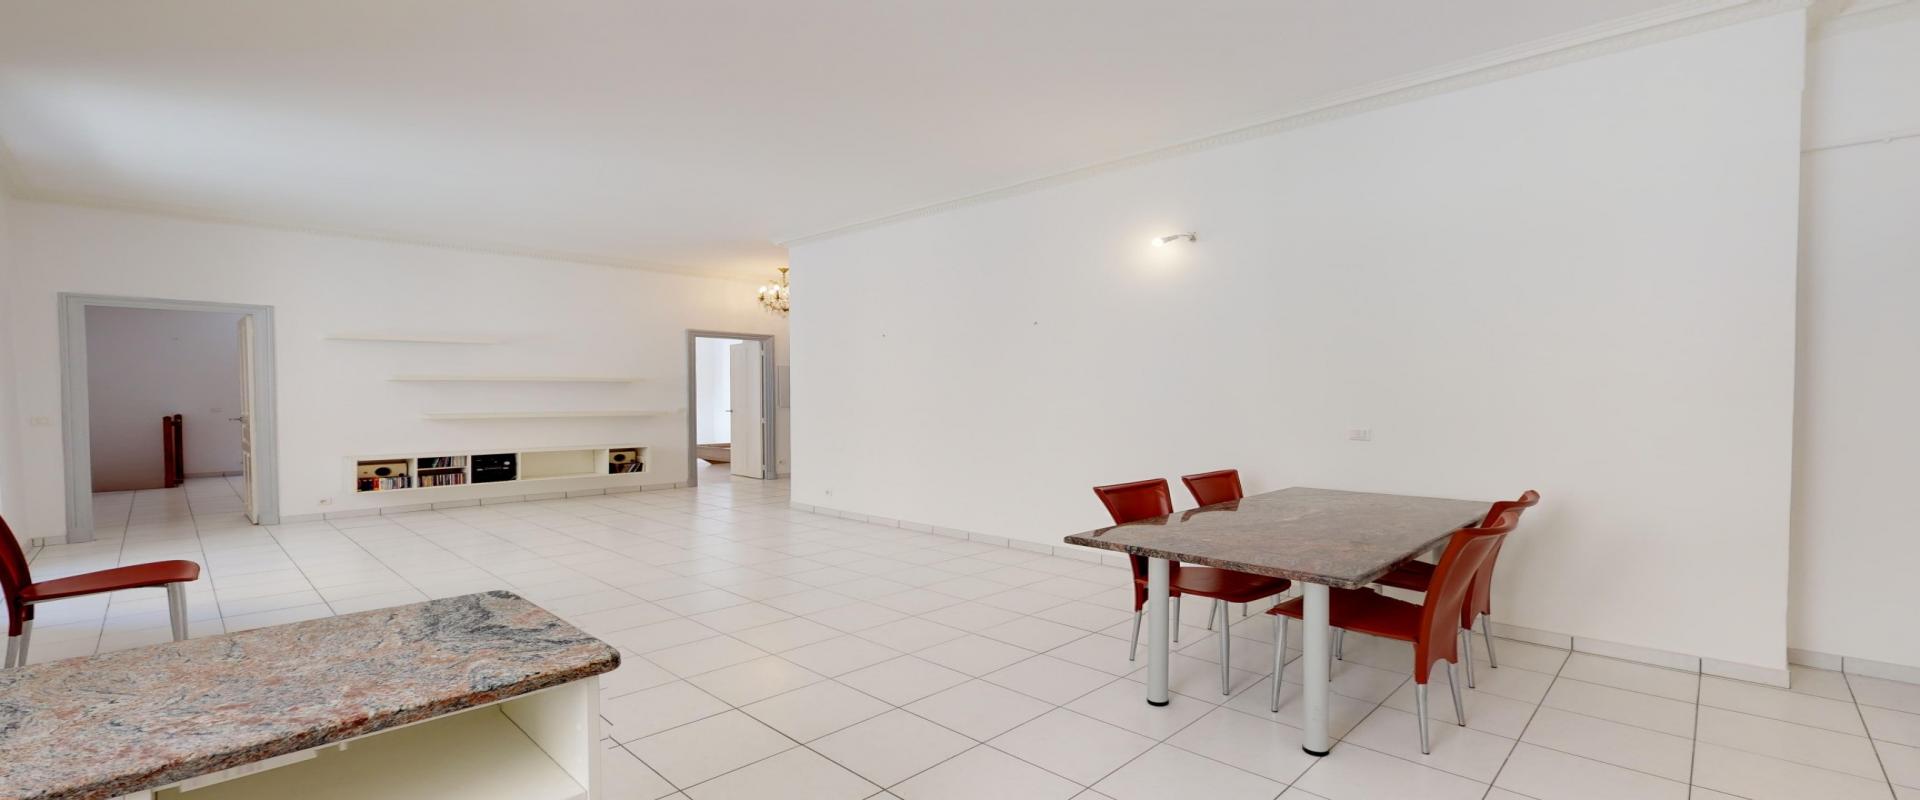 A Ajaccio, hyper centre, Vente d'un appartement F3-4 d'une superficie de 100 m² - Belle hauteur sous plafond